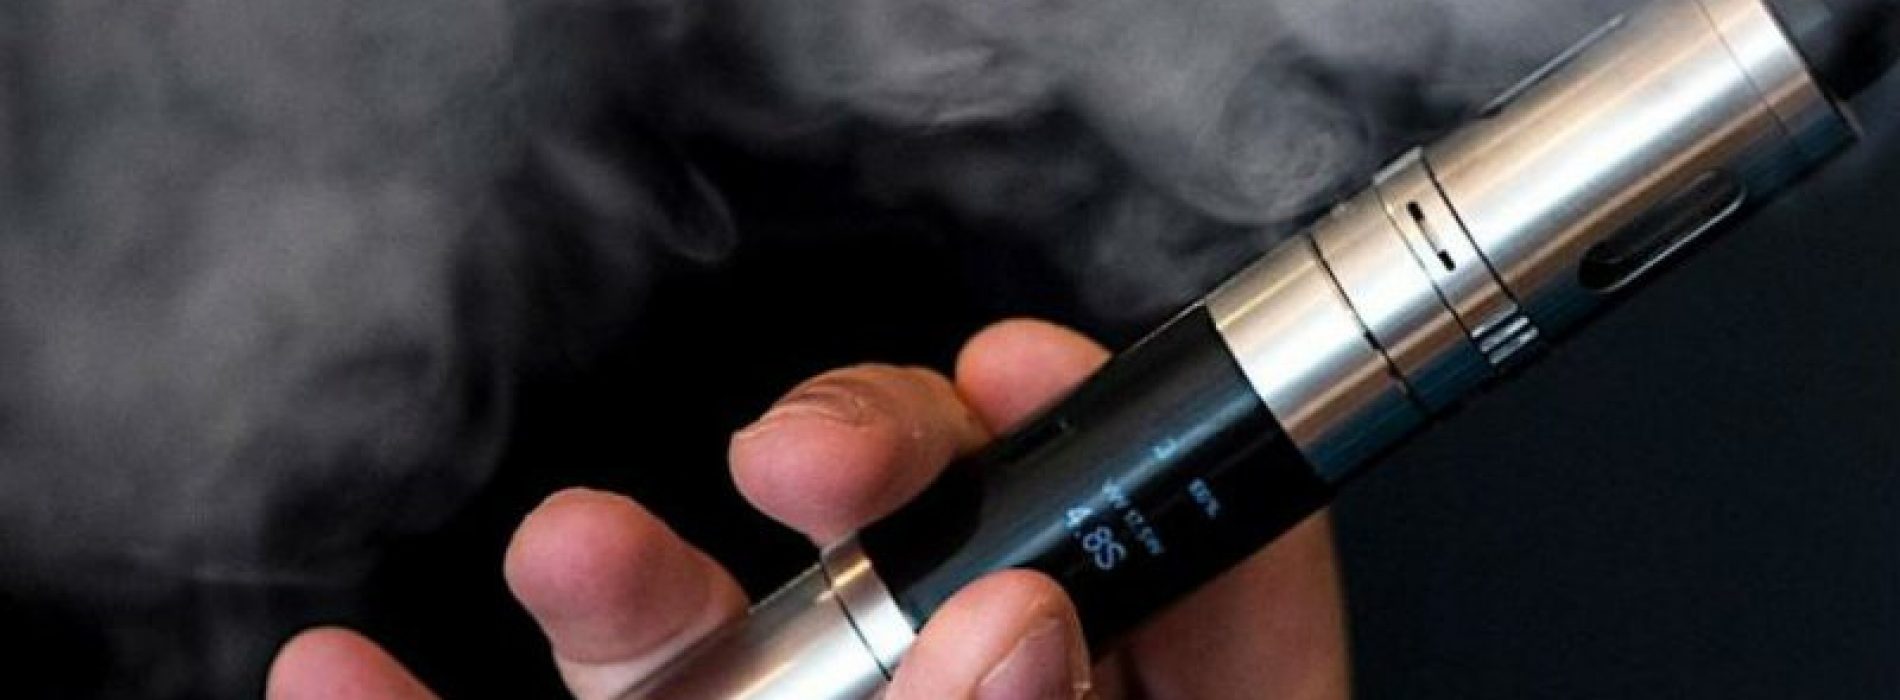 E-sigaret veroorzaakt longkanker bij muizen